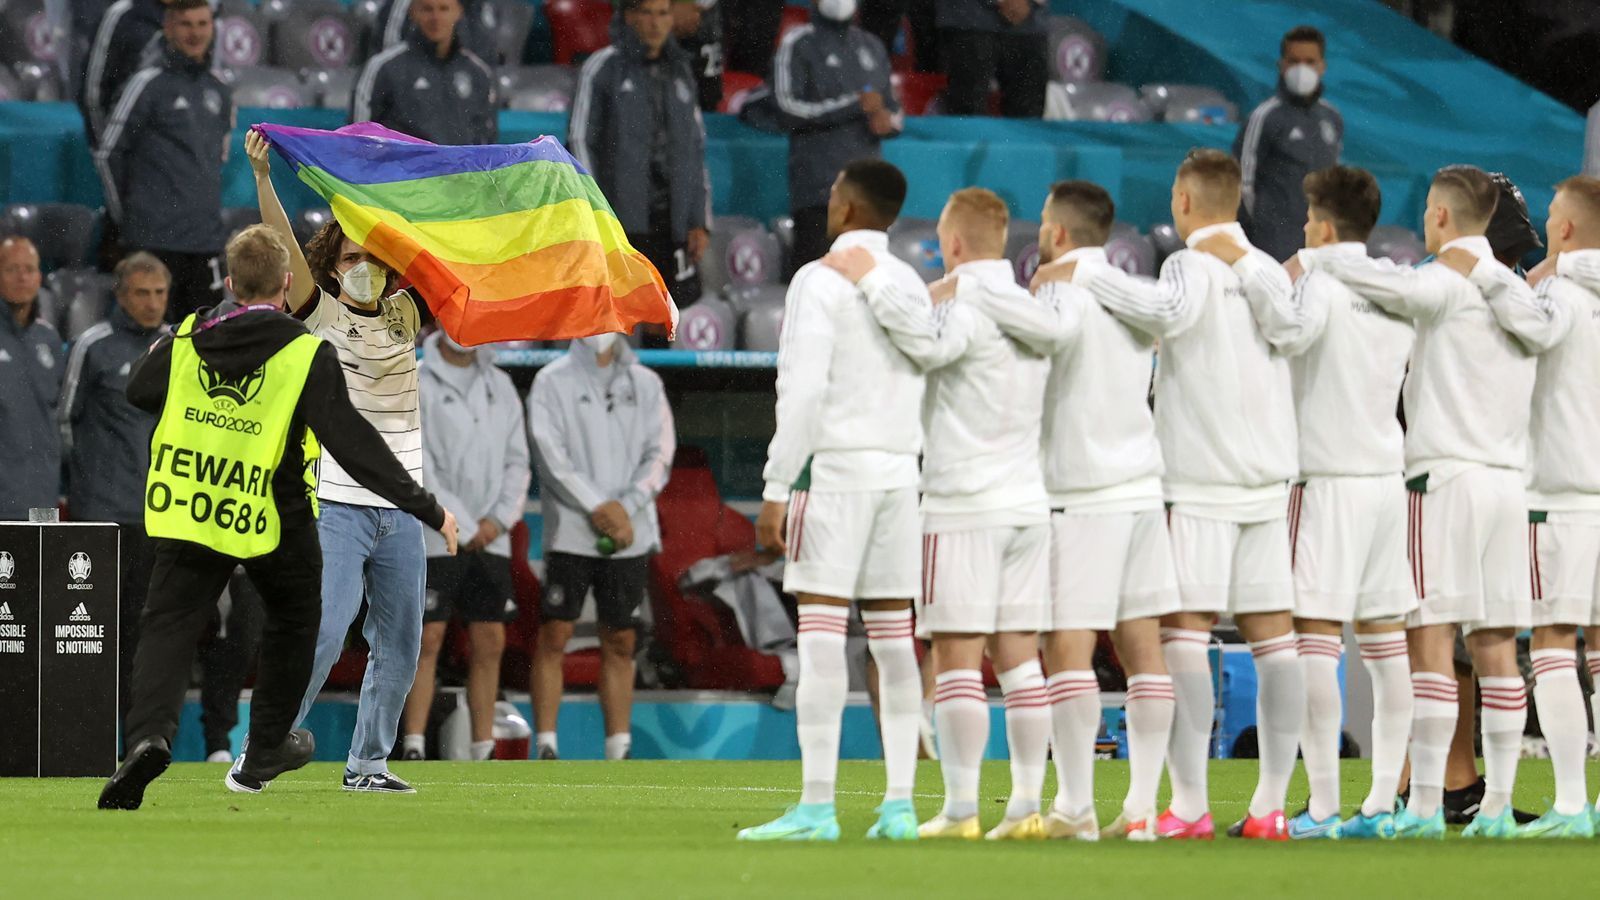 
                <strong>Unschöne Szene während der Hymne</strong><br>
                Während der Nationalhymne Ungarns schaffte es ein Flitzer bis auf das Spielfeld und vor die Mannschaft der Gäste. Dort protestierte er für einige Sekunden mit einer Regenbogenfahne, ... 
              